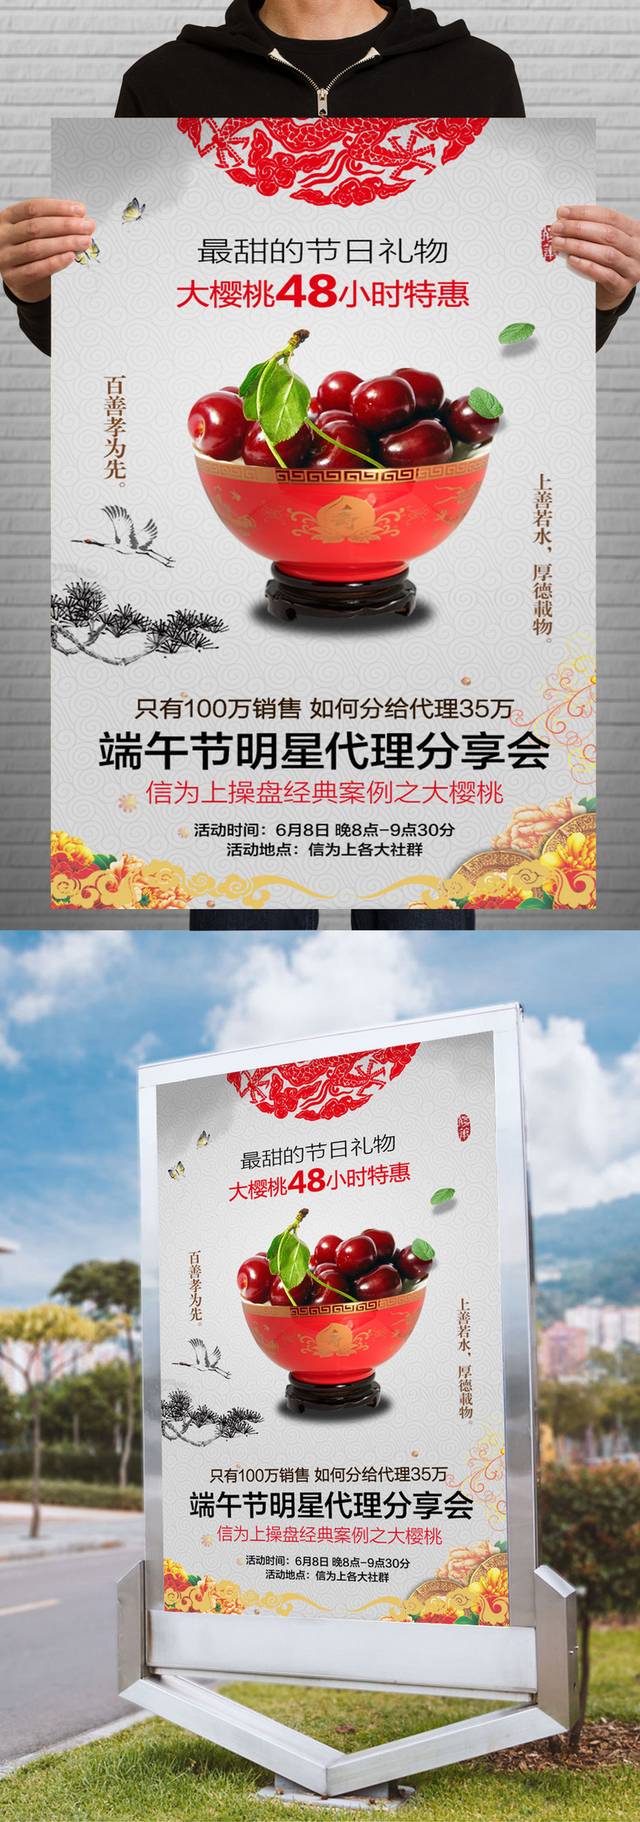 樱桃促销宣传海报